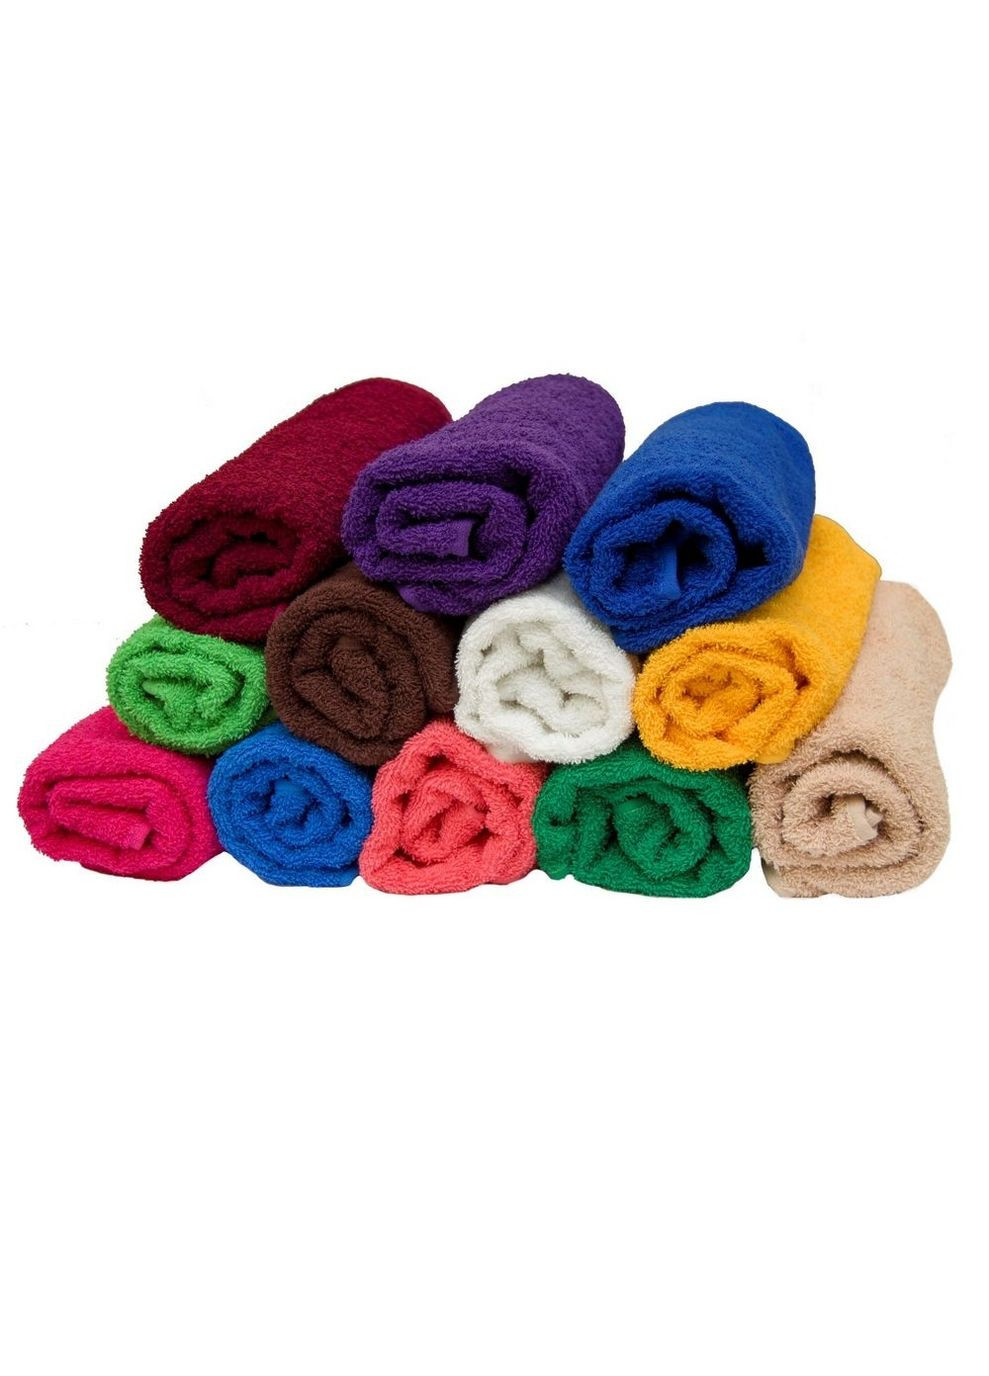 GM Textile полотенце для рук и лица махровое 40х70см 400г/м2 (коричневый) комбинированный производство -